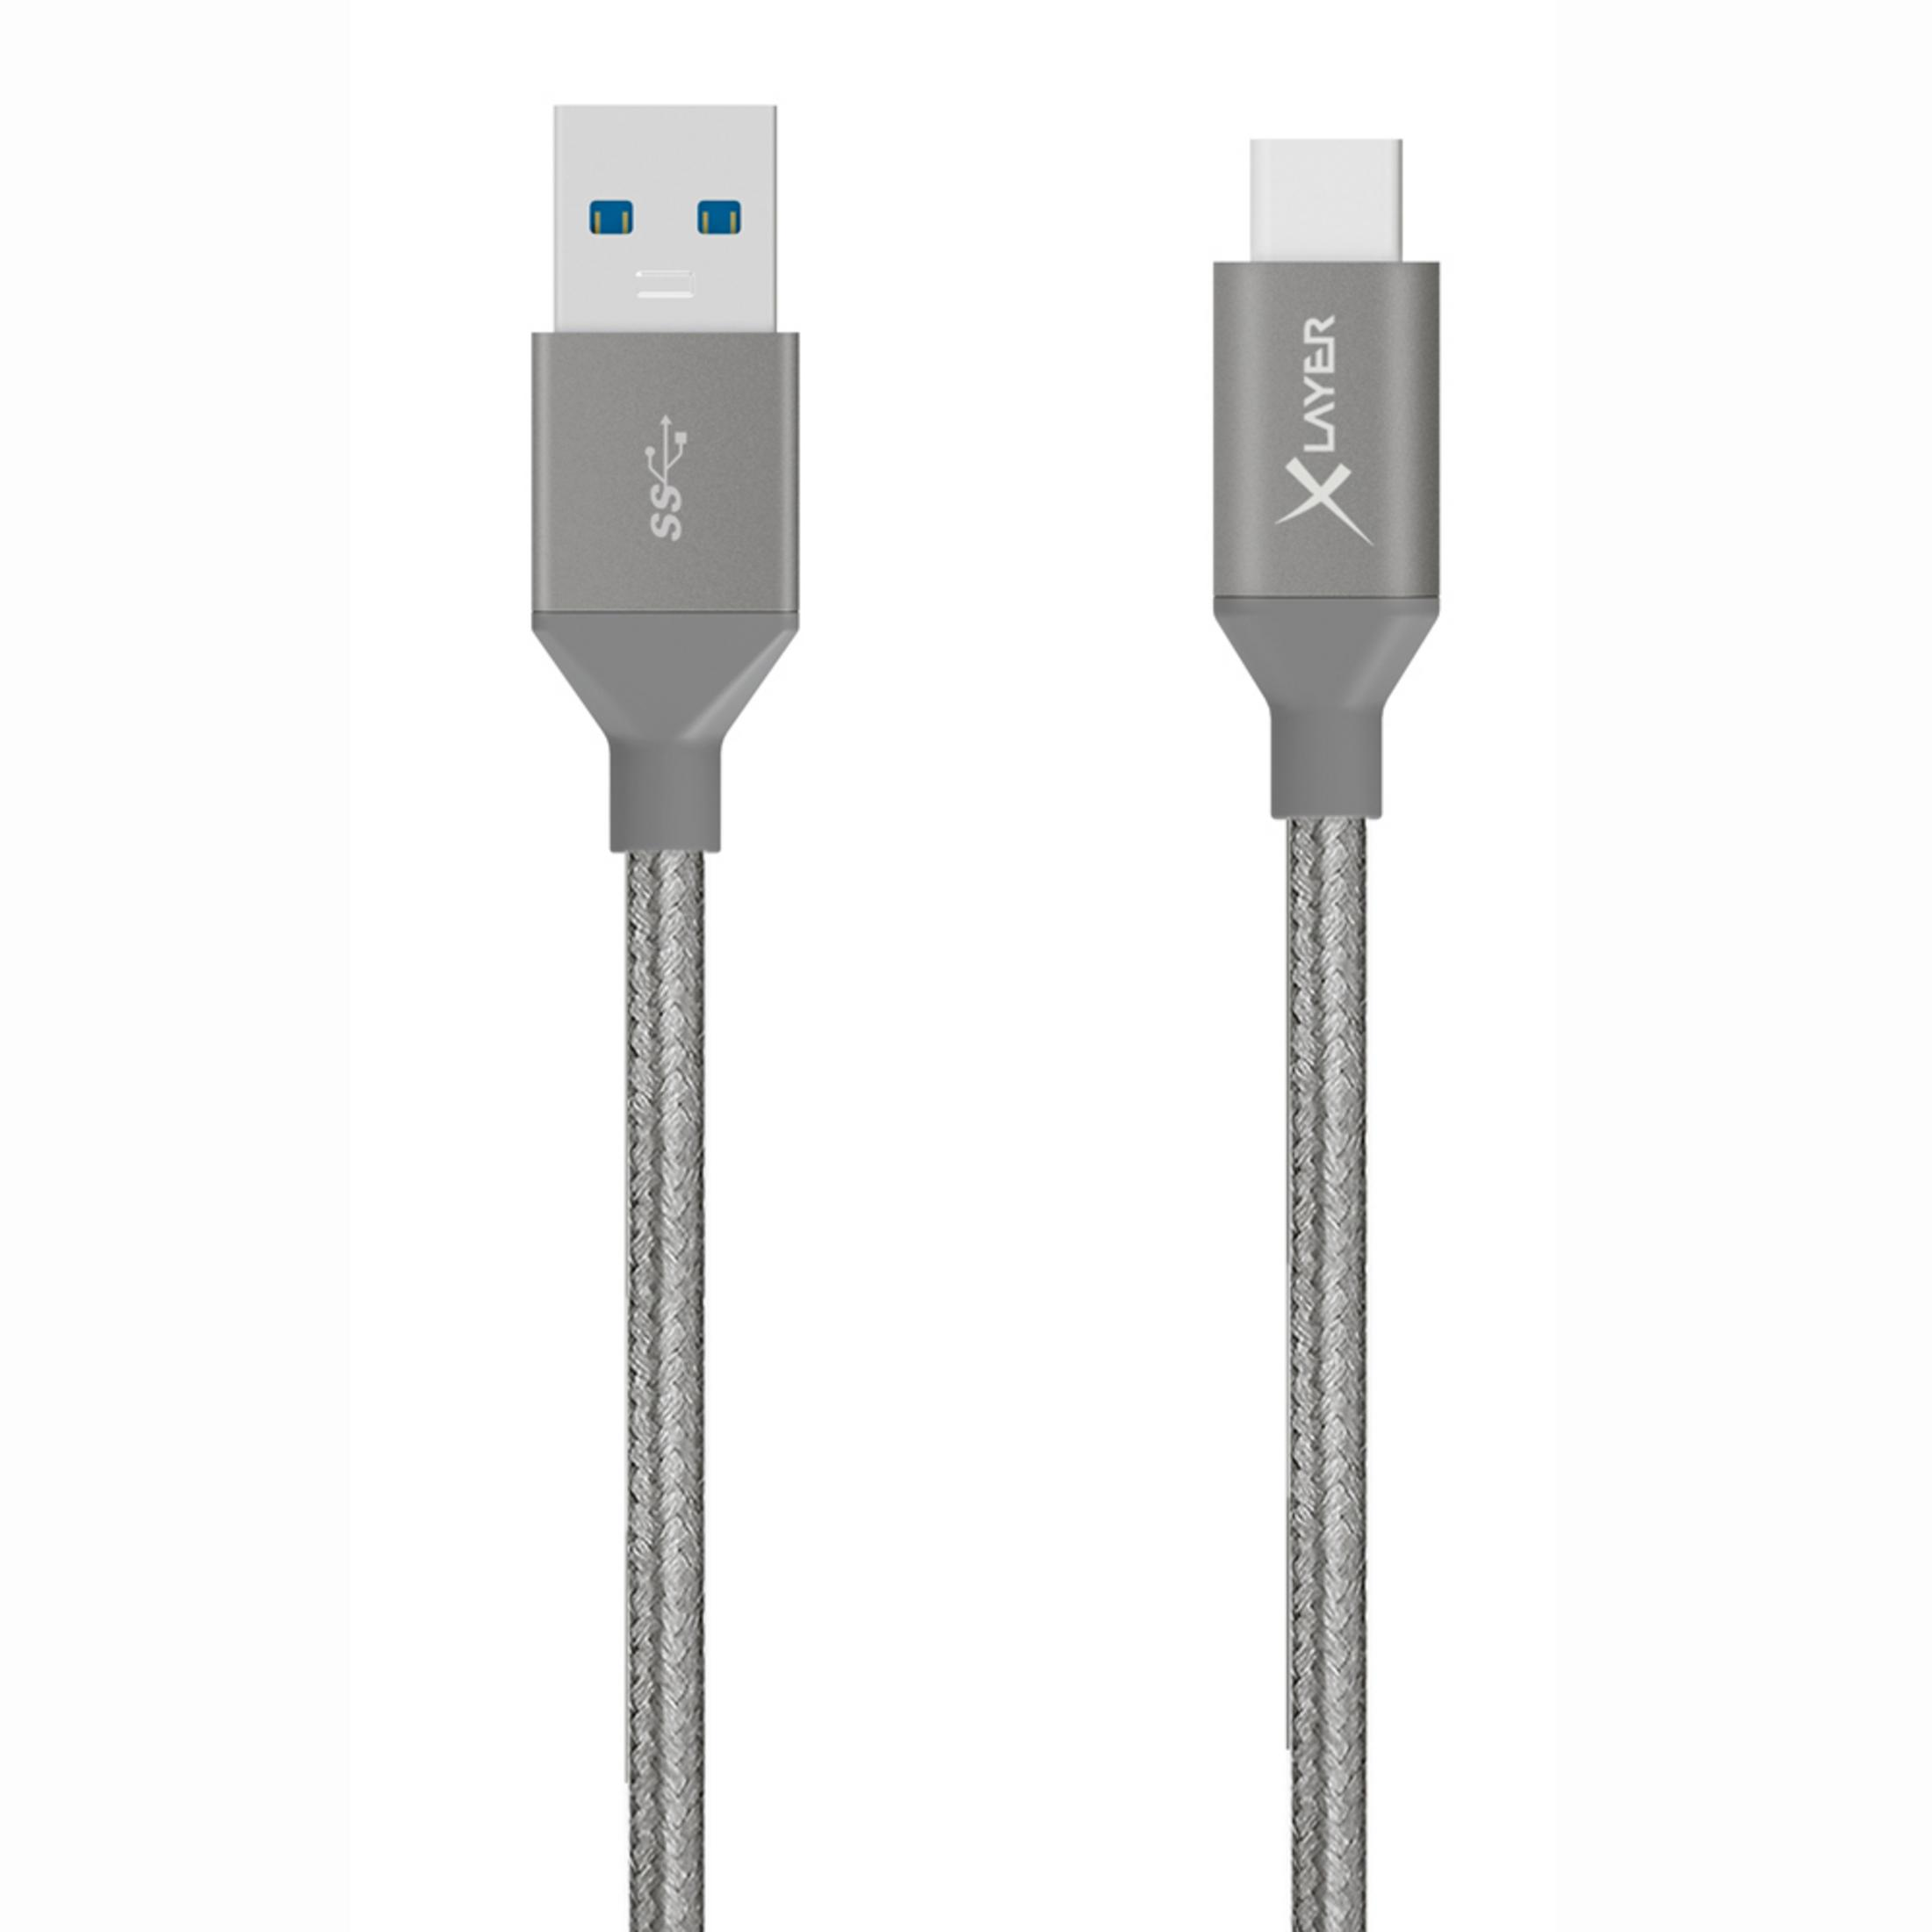 3.0 GRAU, 1.20M 1,2 KABEL m, XLAYER TYPE Grau TO USB 211573 Ladekabel, C